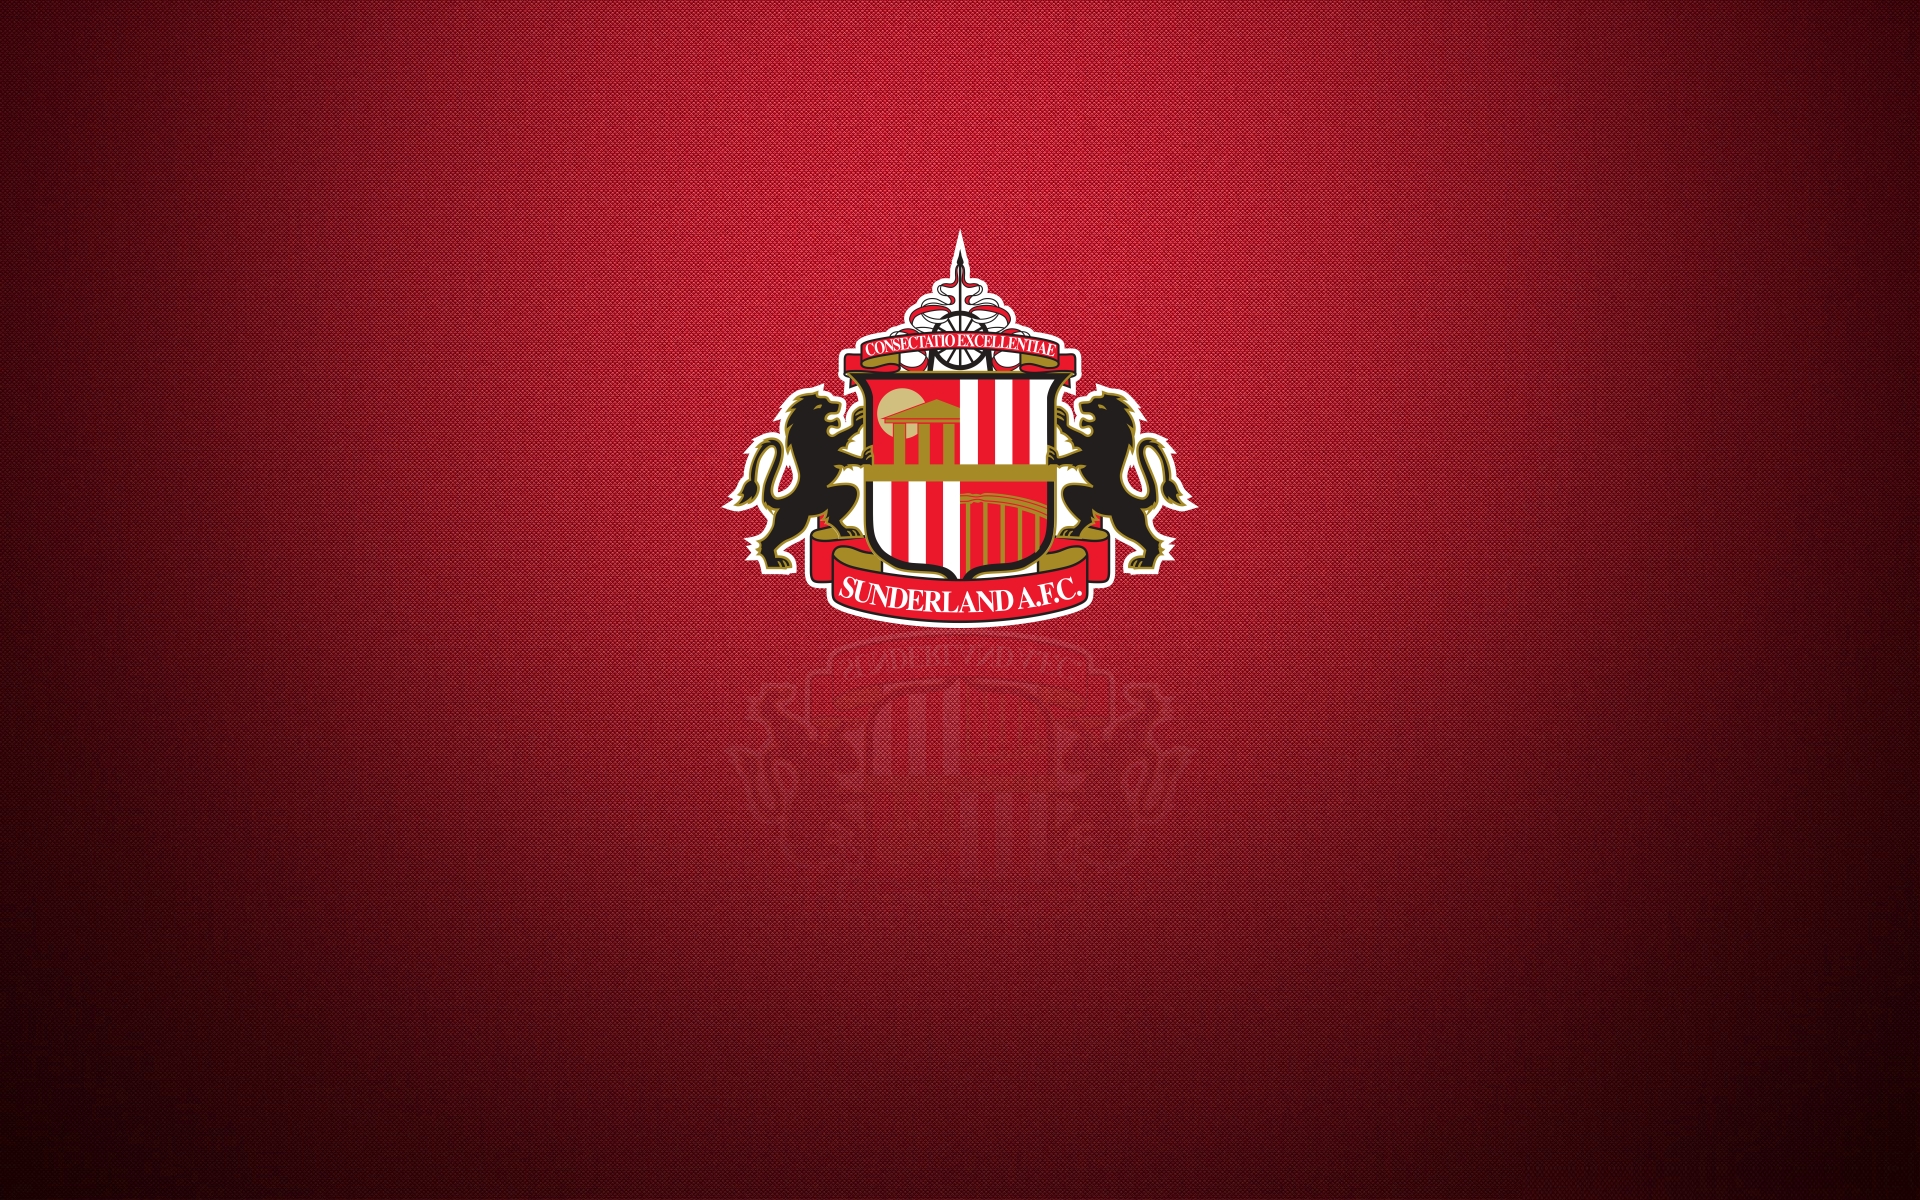 Sunderland AFC Logos Download